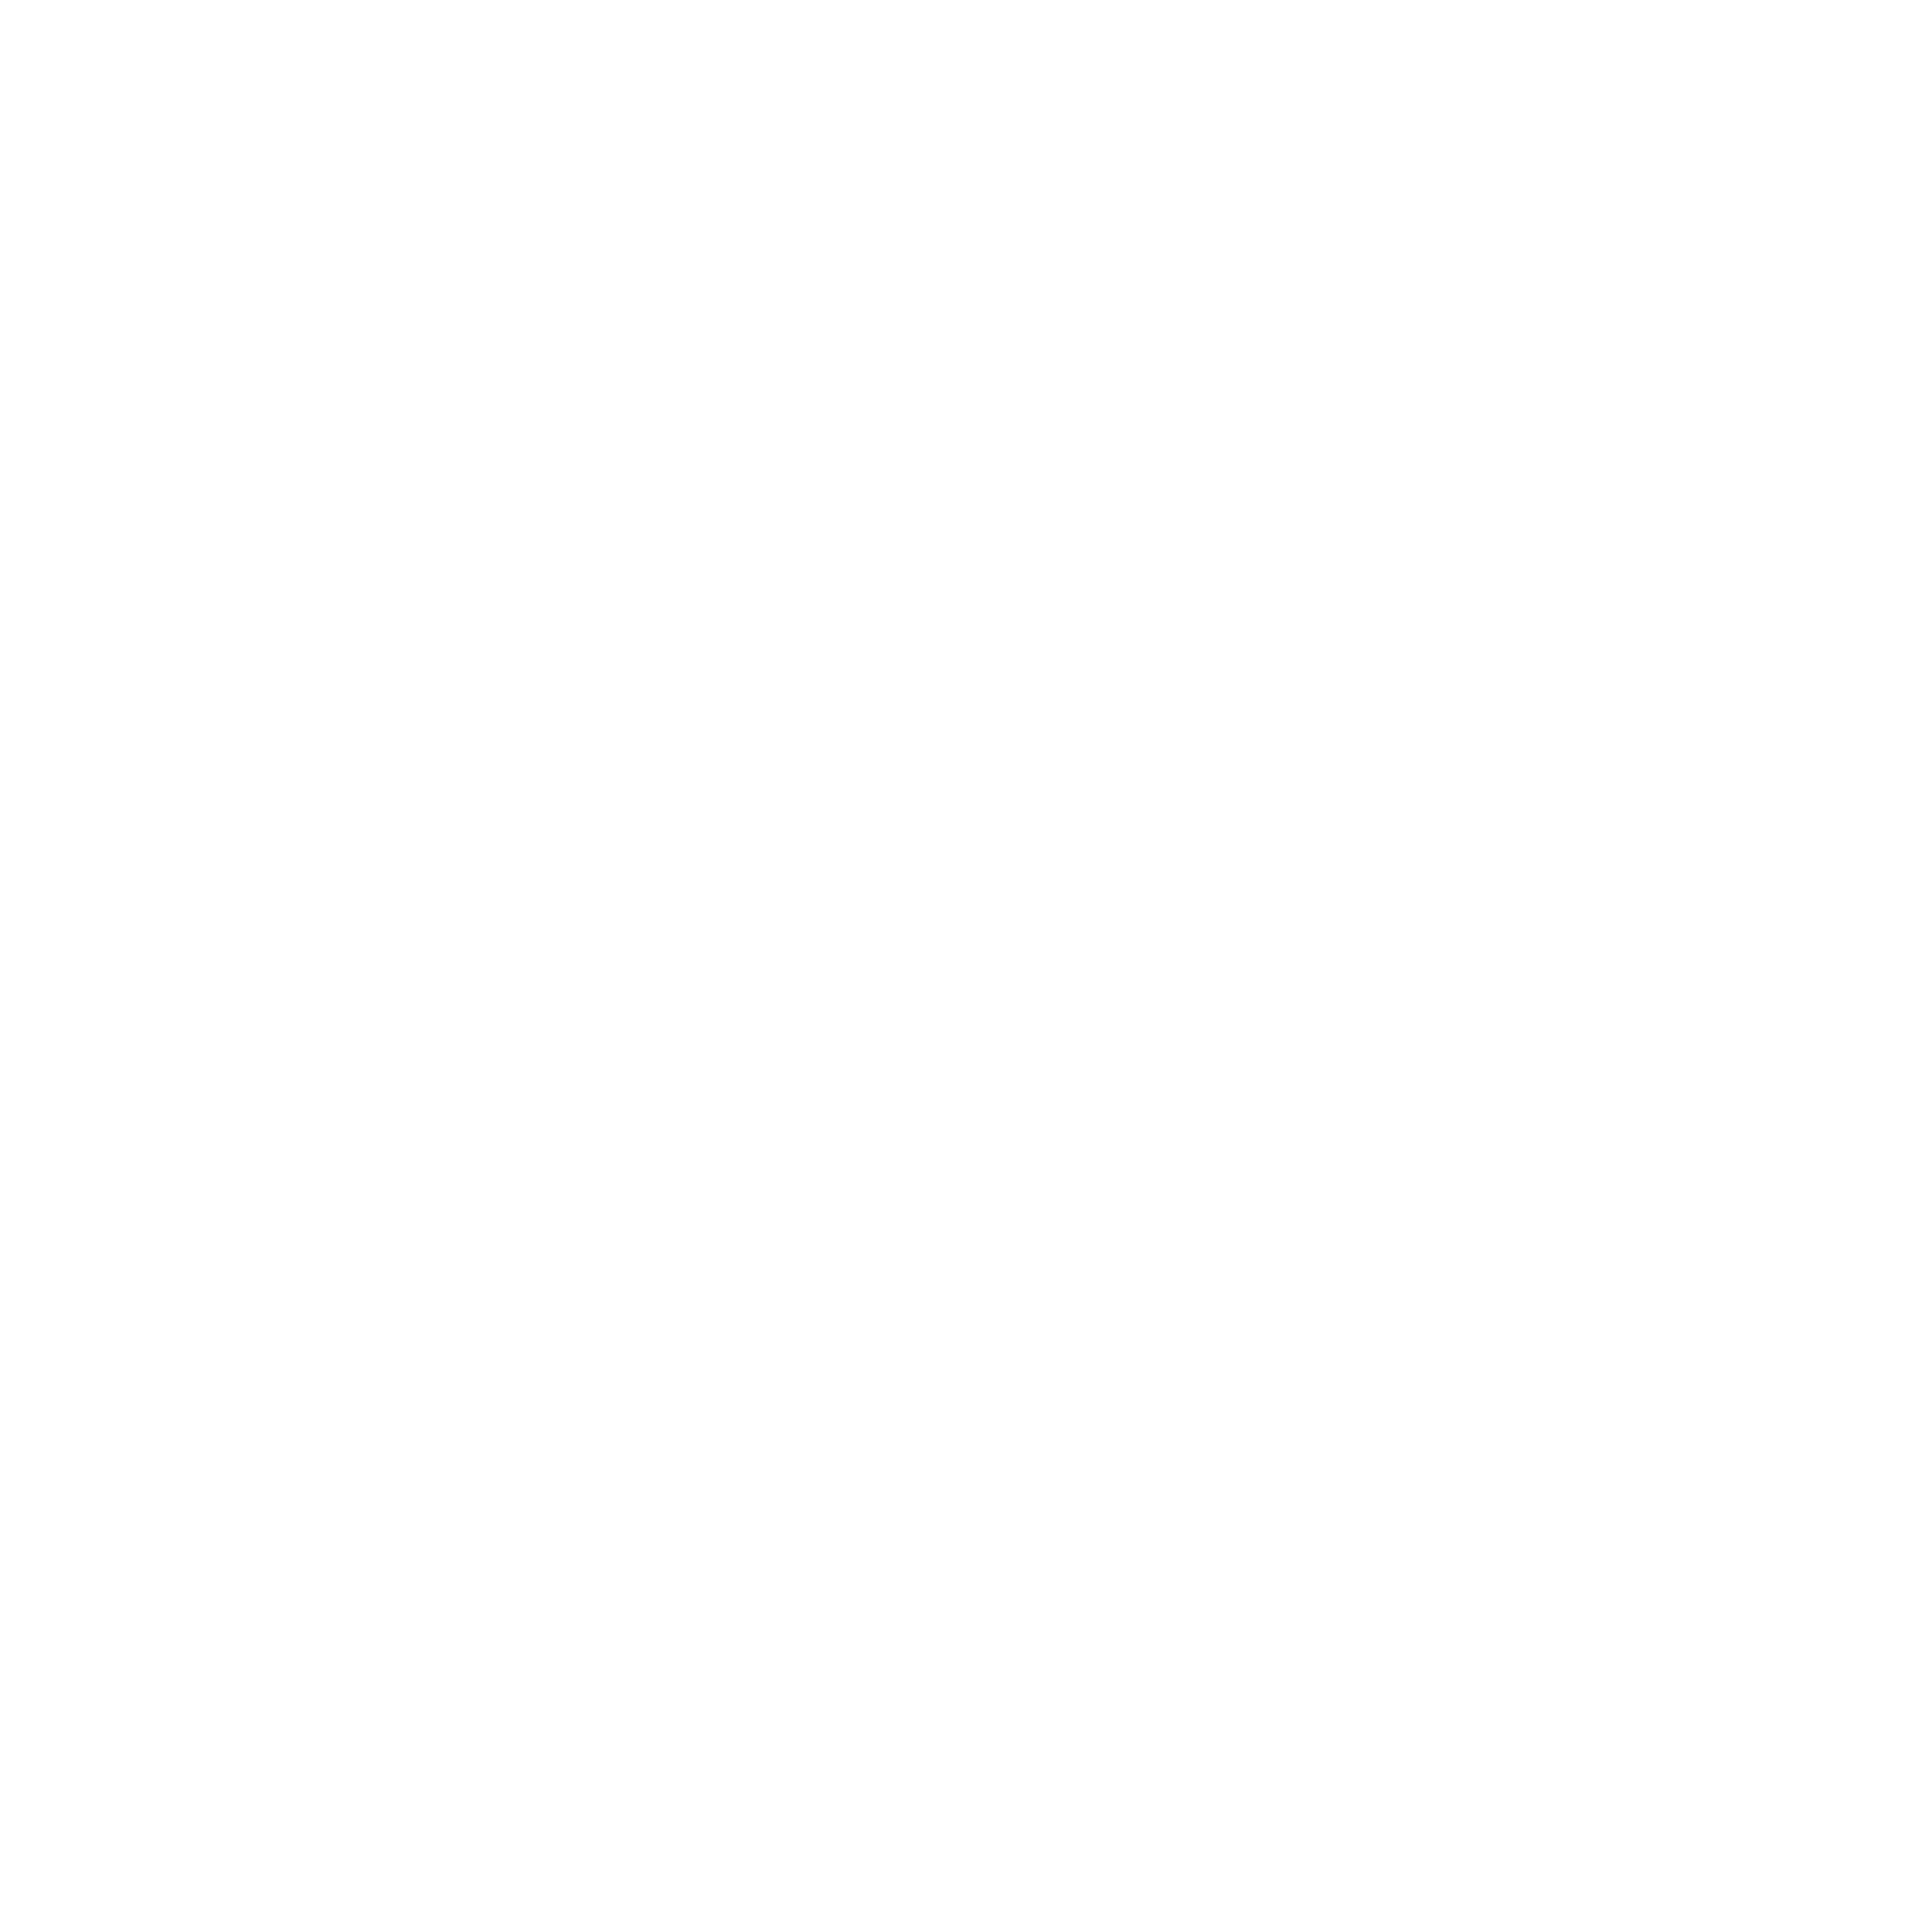 100 Best Chefs Austria